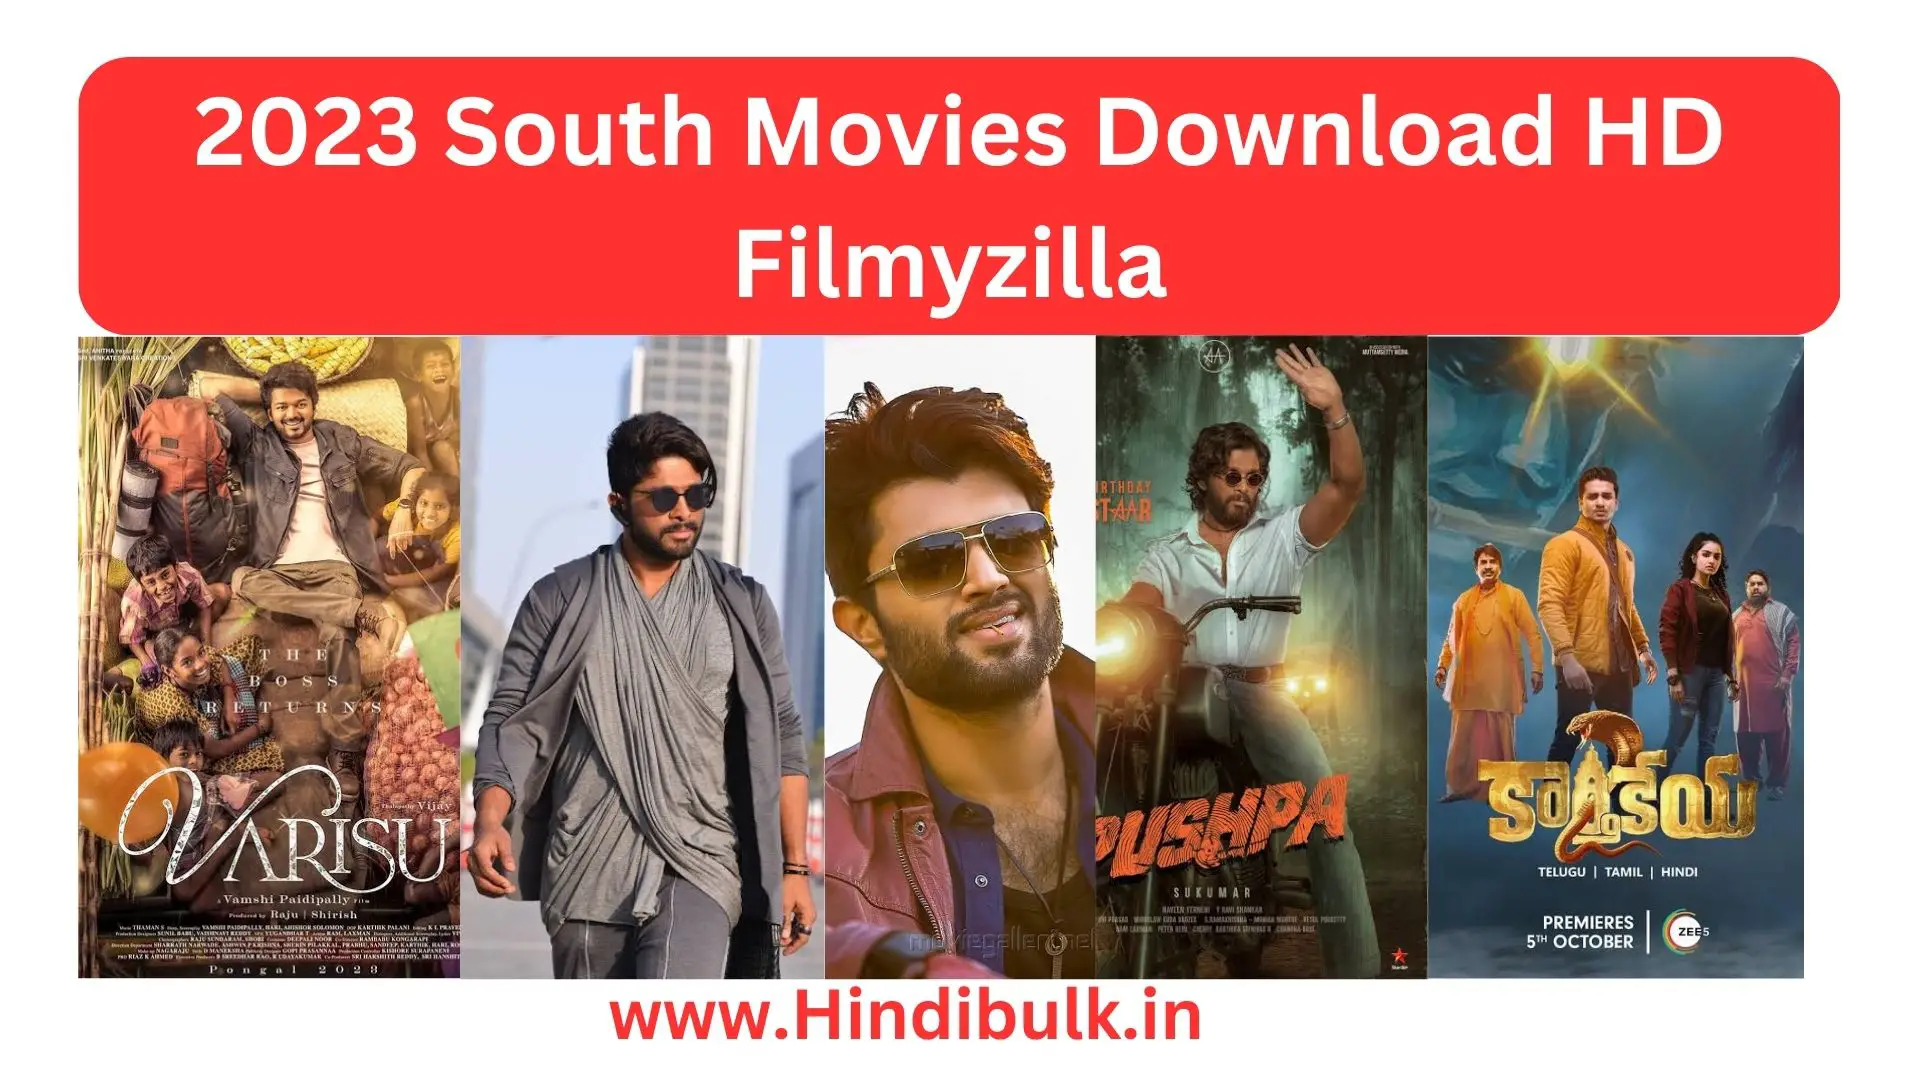 South Movies Download Filmyzilla in Hindi HD - Hindibulk